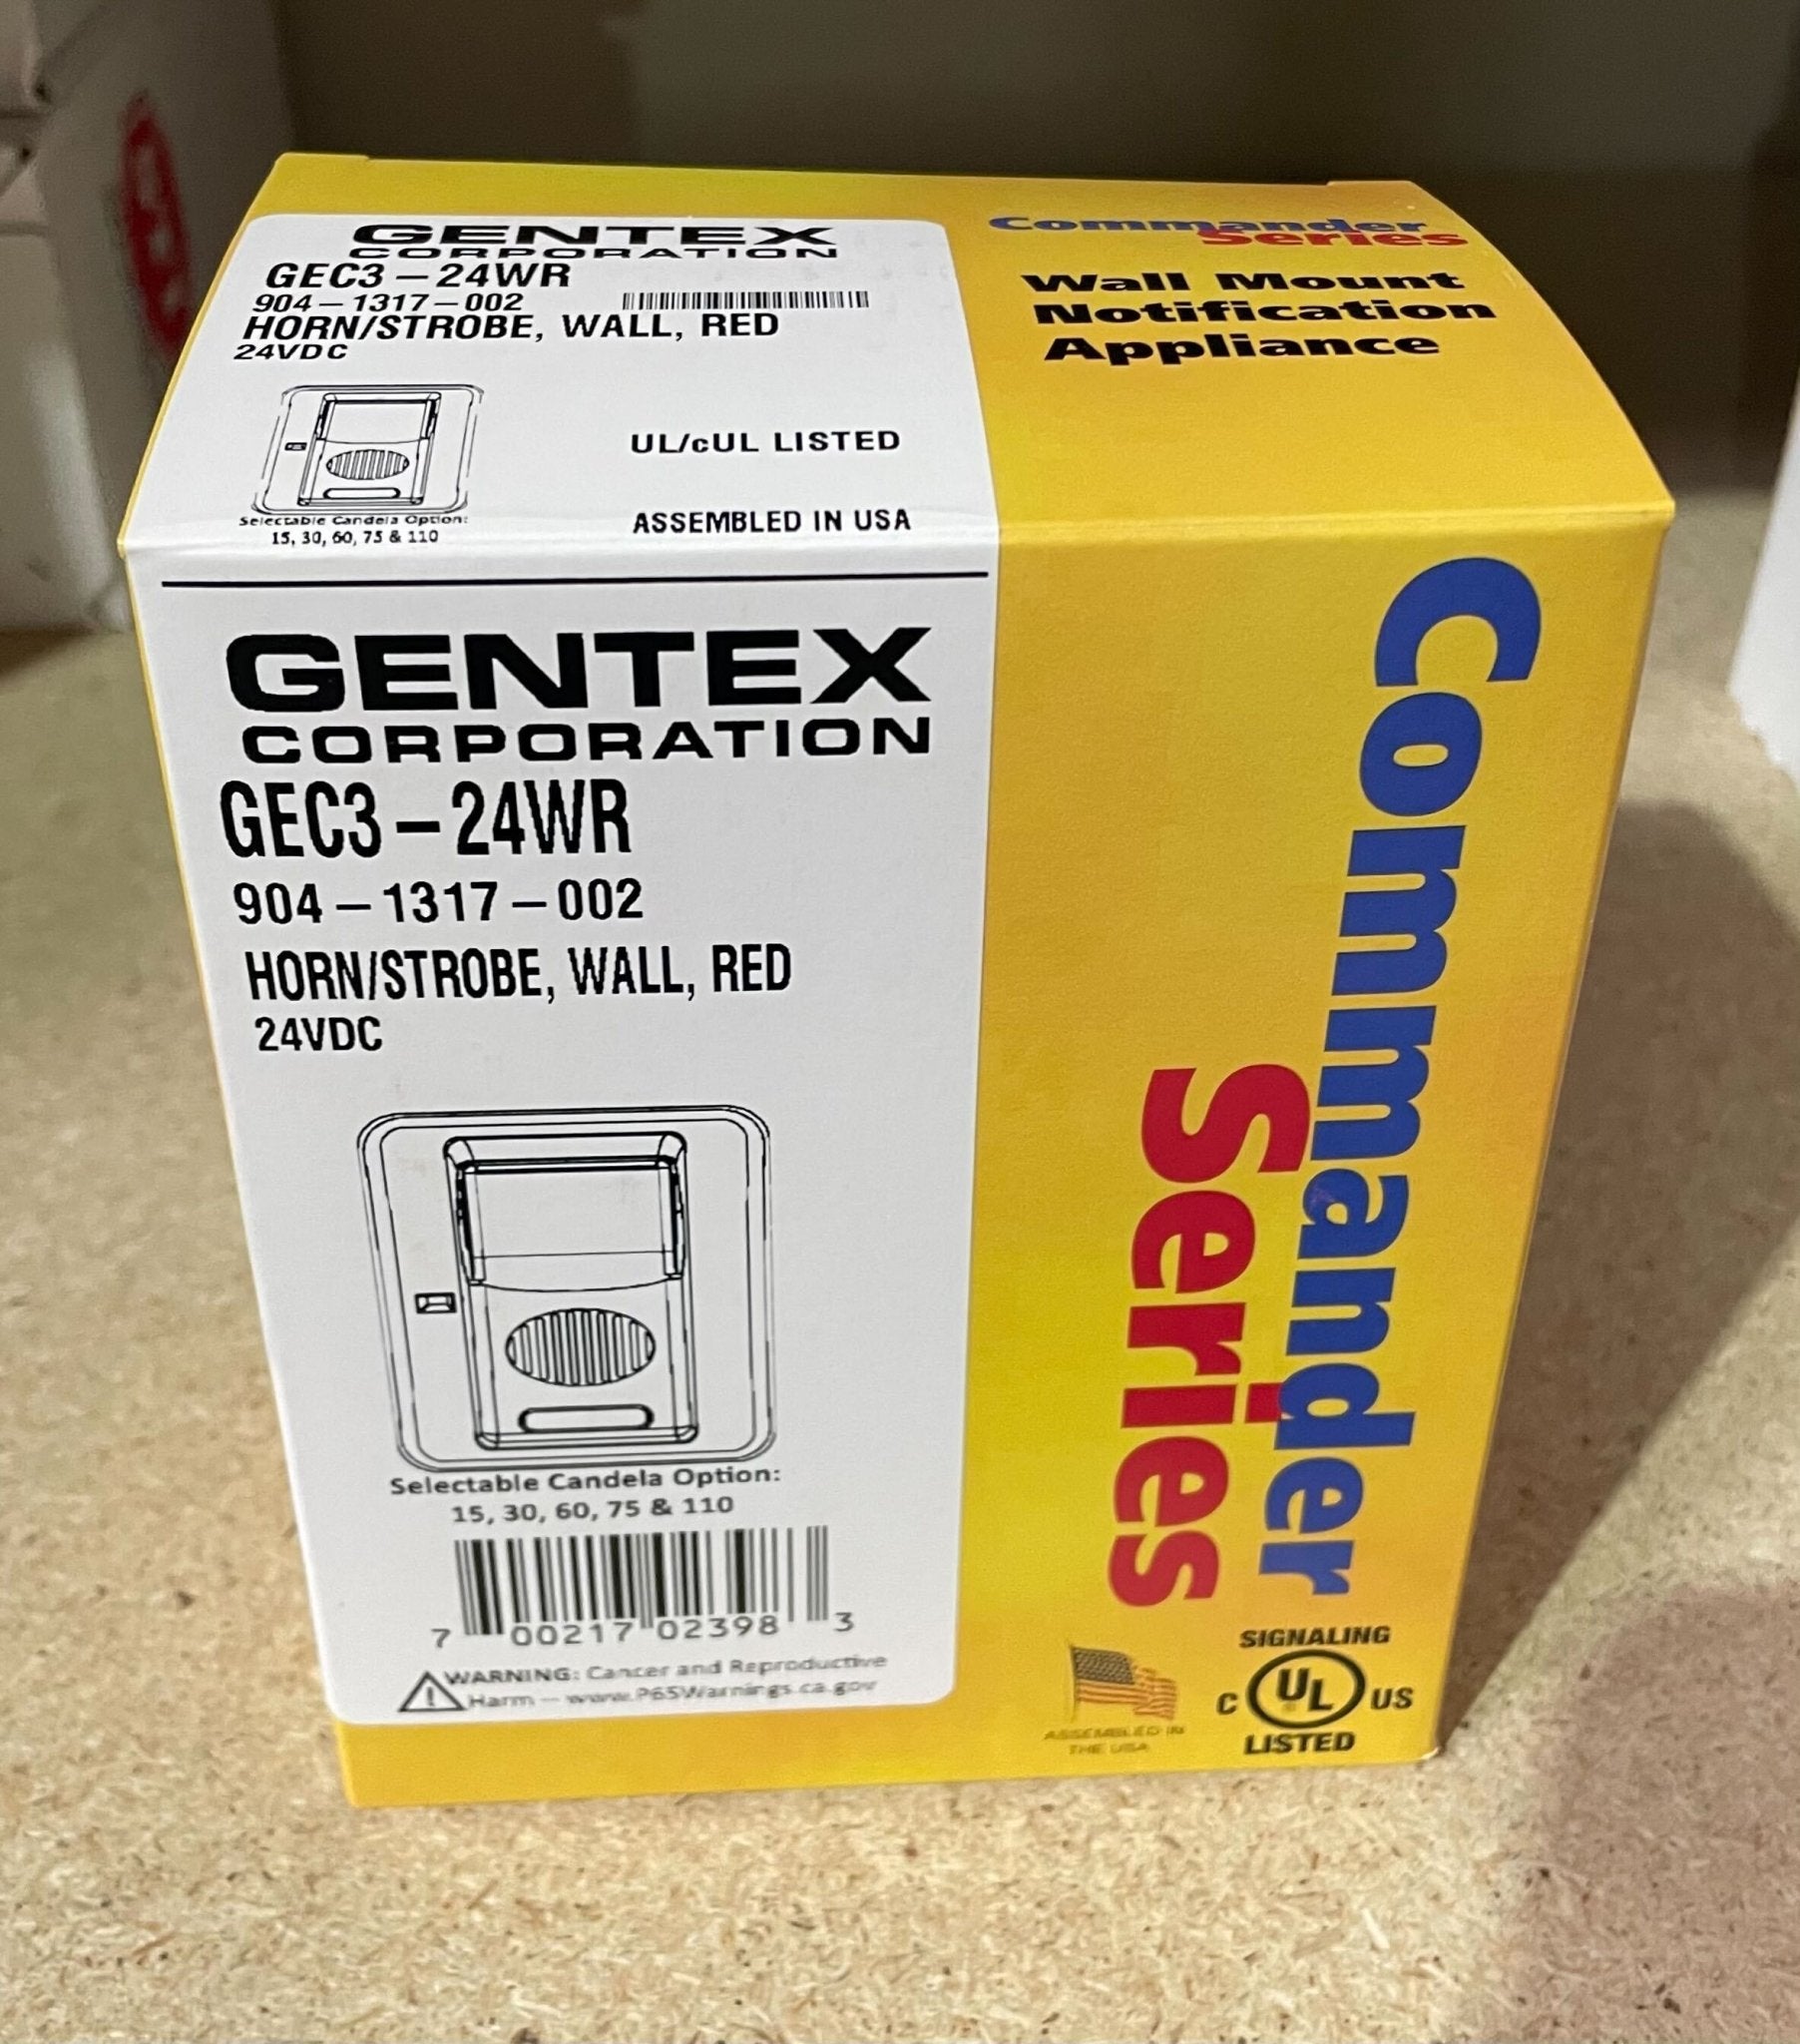 Gentex GEC3-24WR - The Fire Alarm Supplier